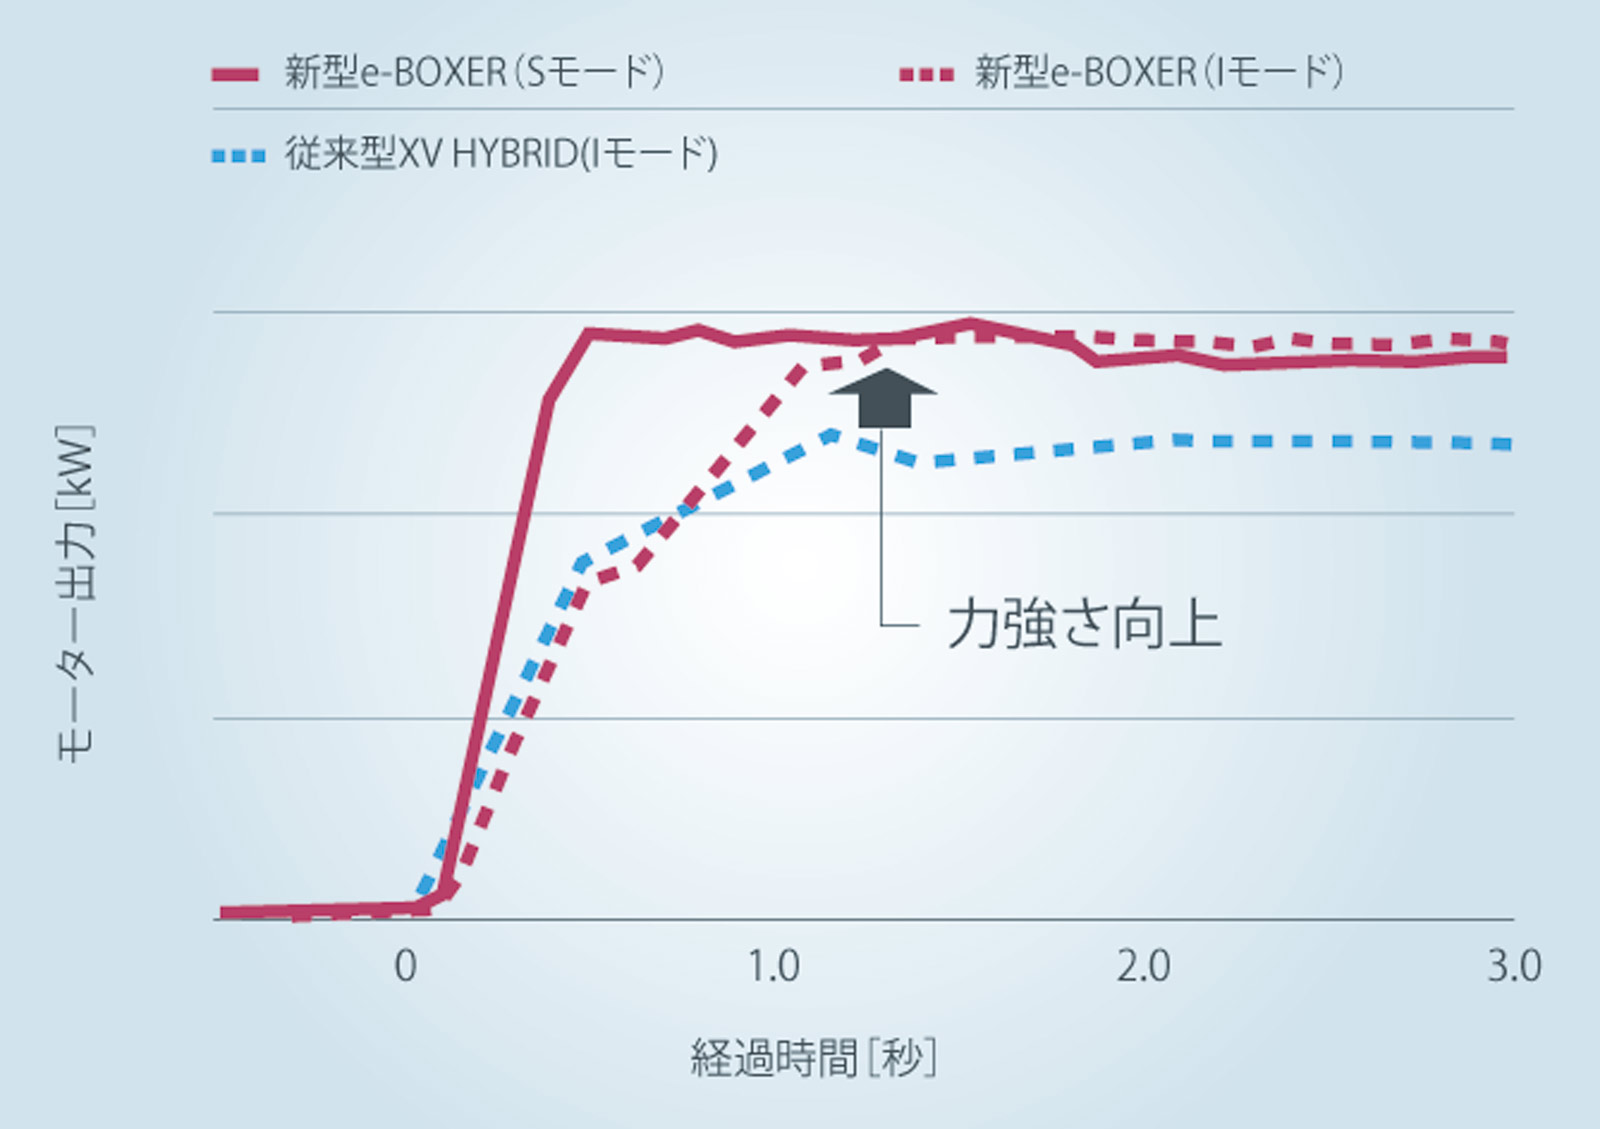 e-BOXER 加速比較